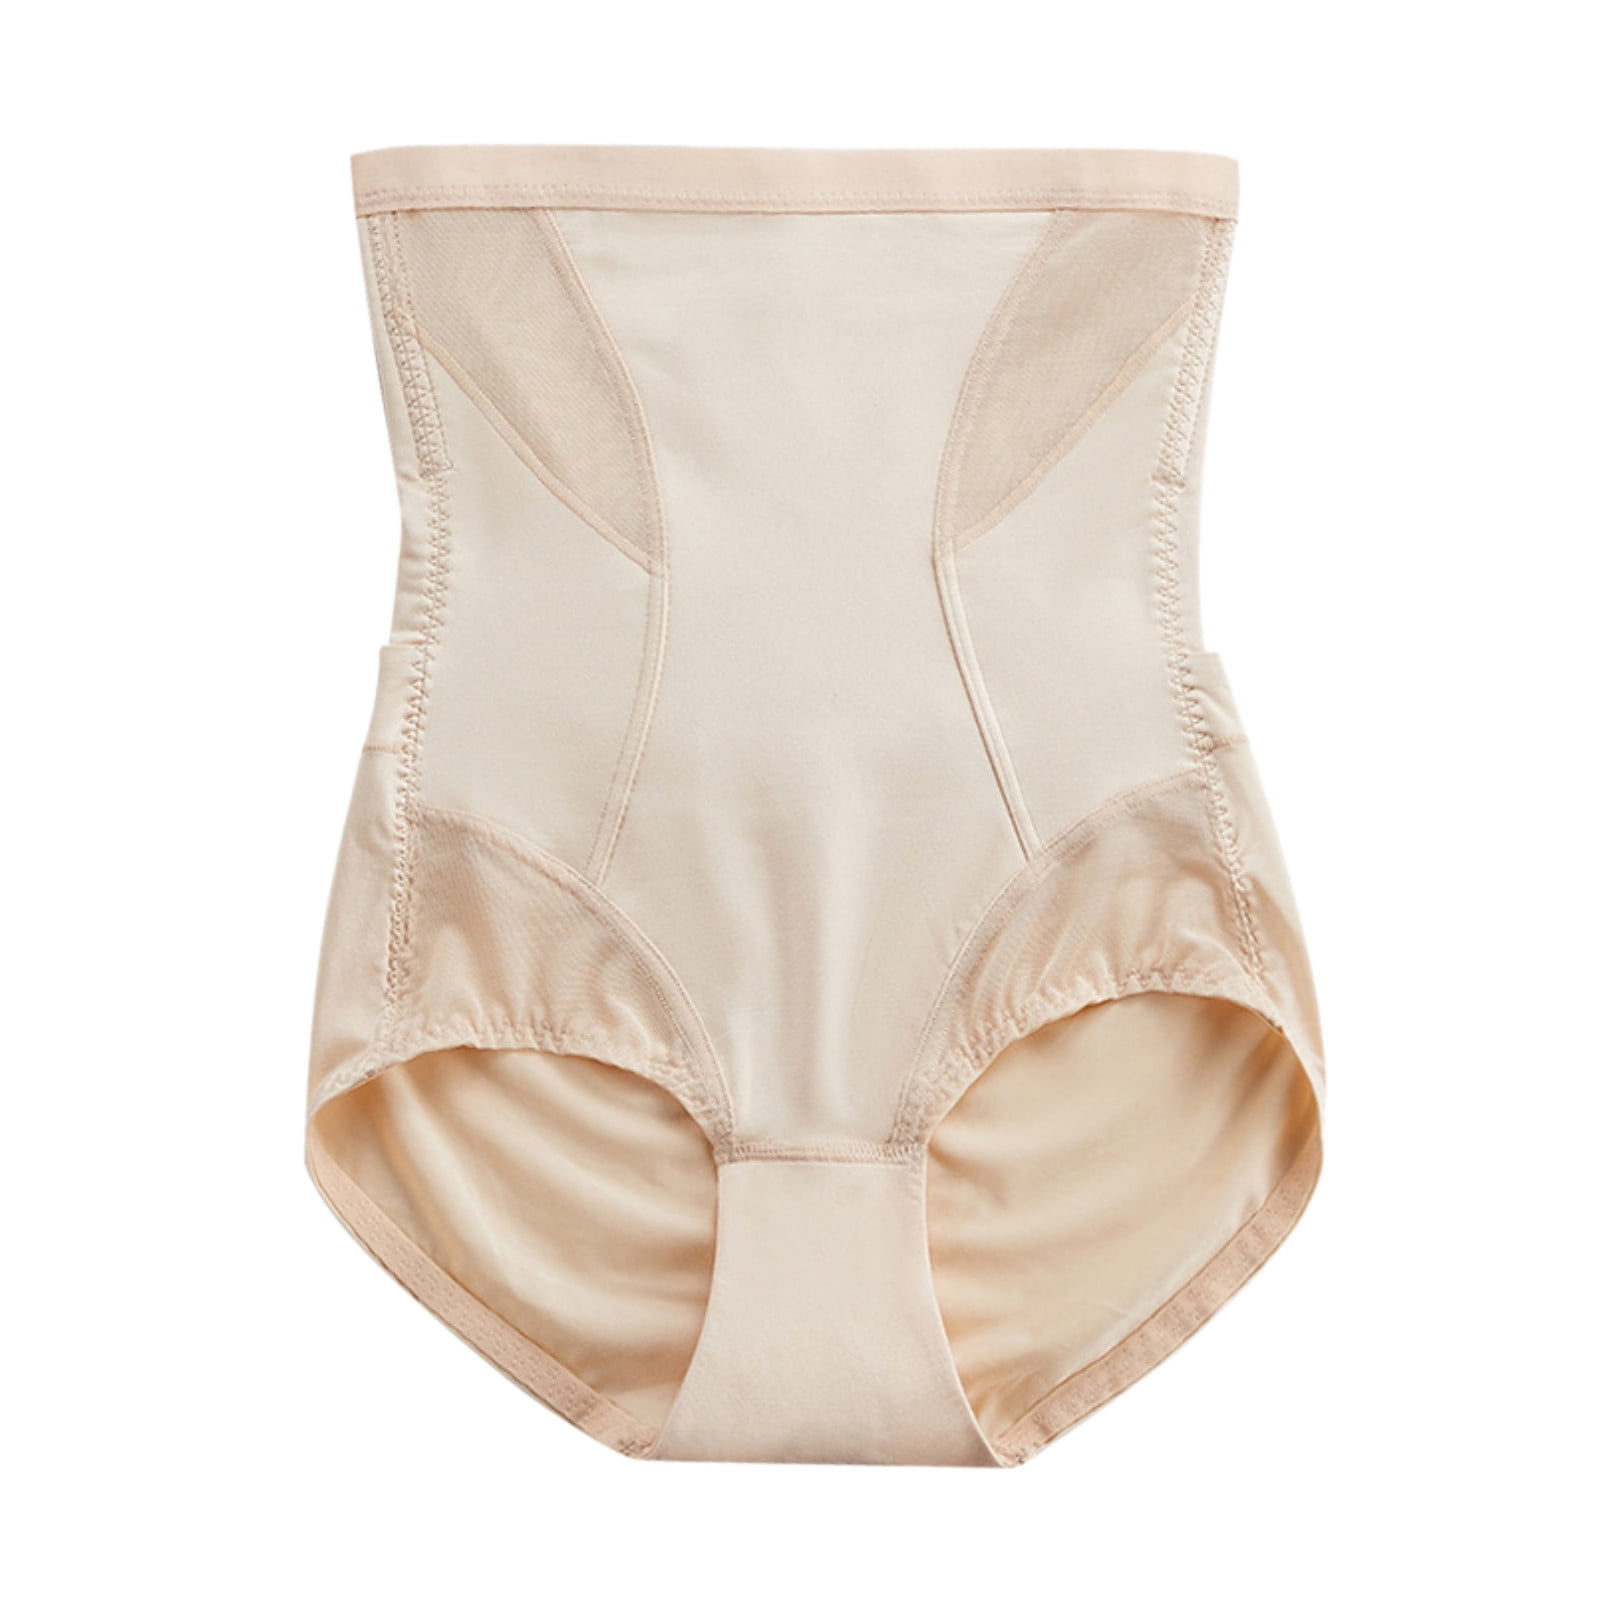 shpwfbe underwear women body shaper control slim tummy corset high waist  shapewear bras for women lingerie for women 